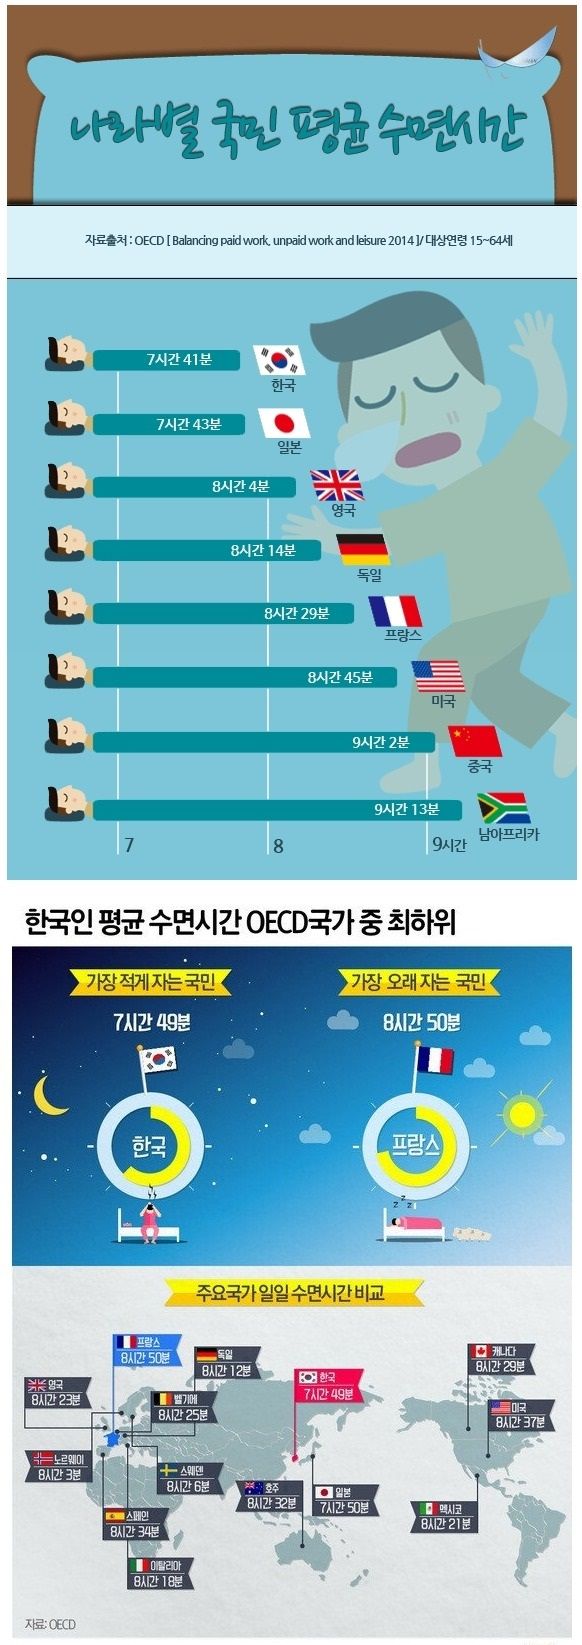 한국이 세계 1위인 분야(0)